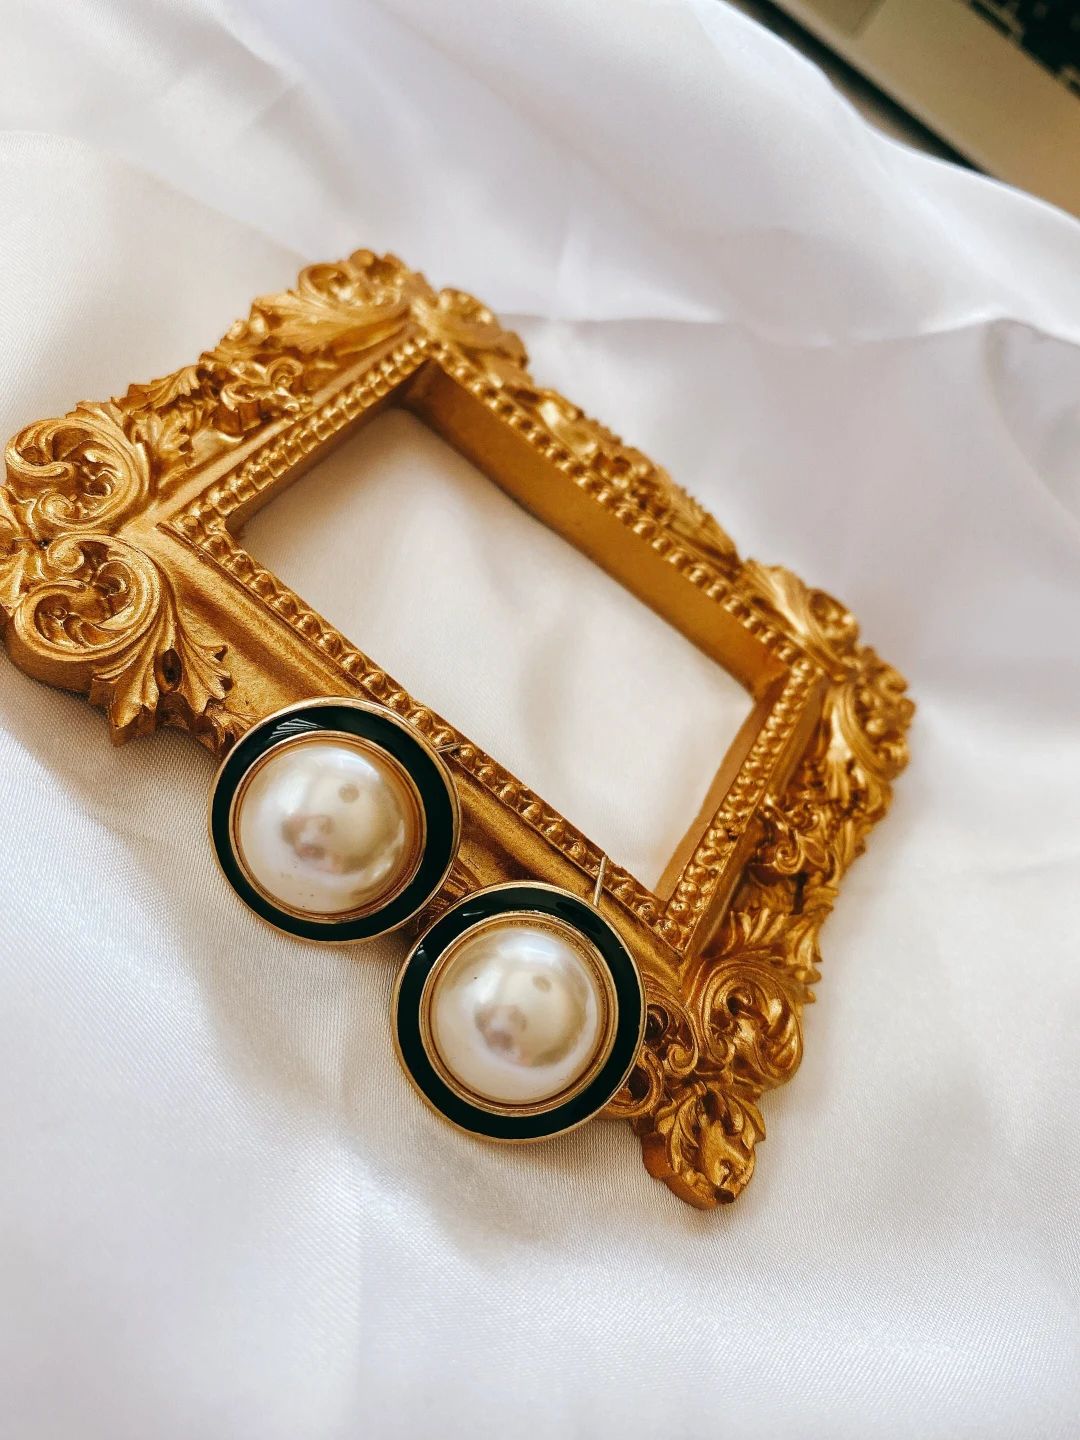 Vintage Pearl Earrings Black and White Earringsaudrey Hepburn Style Earrings - Etsy Canada | Etsy (CAD)